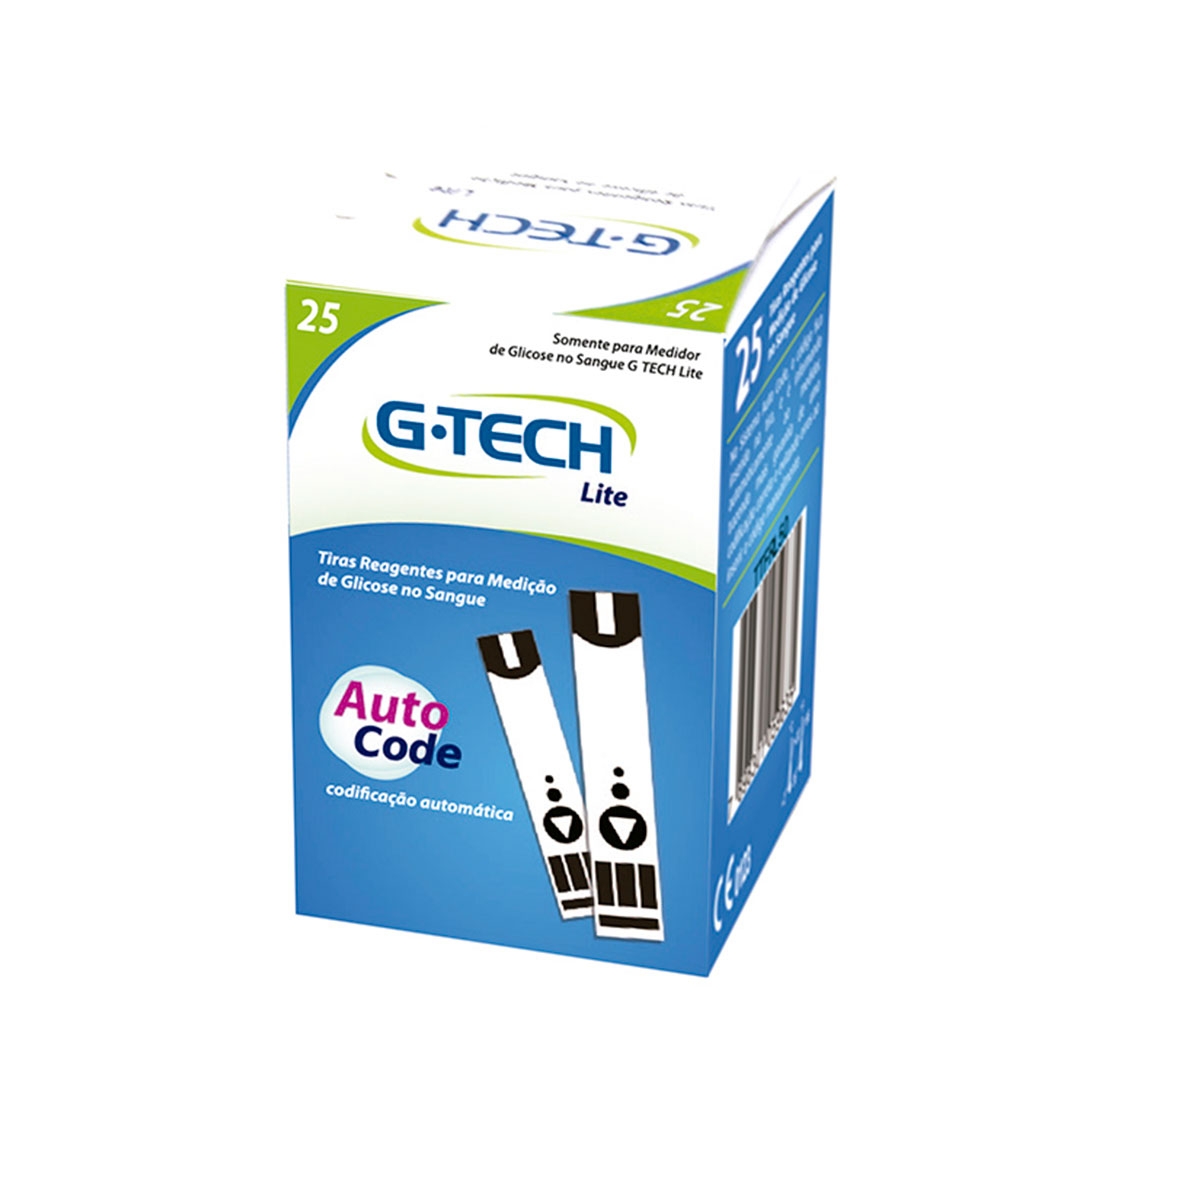 Kit 6 Cx De Tiras De Glicemia+ap Medidor Glicose G-tech Free